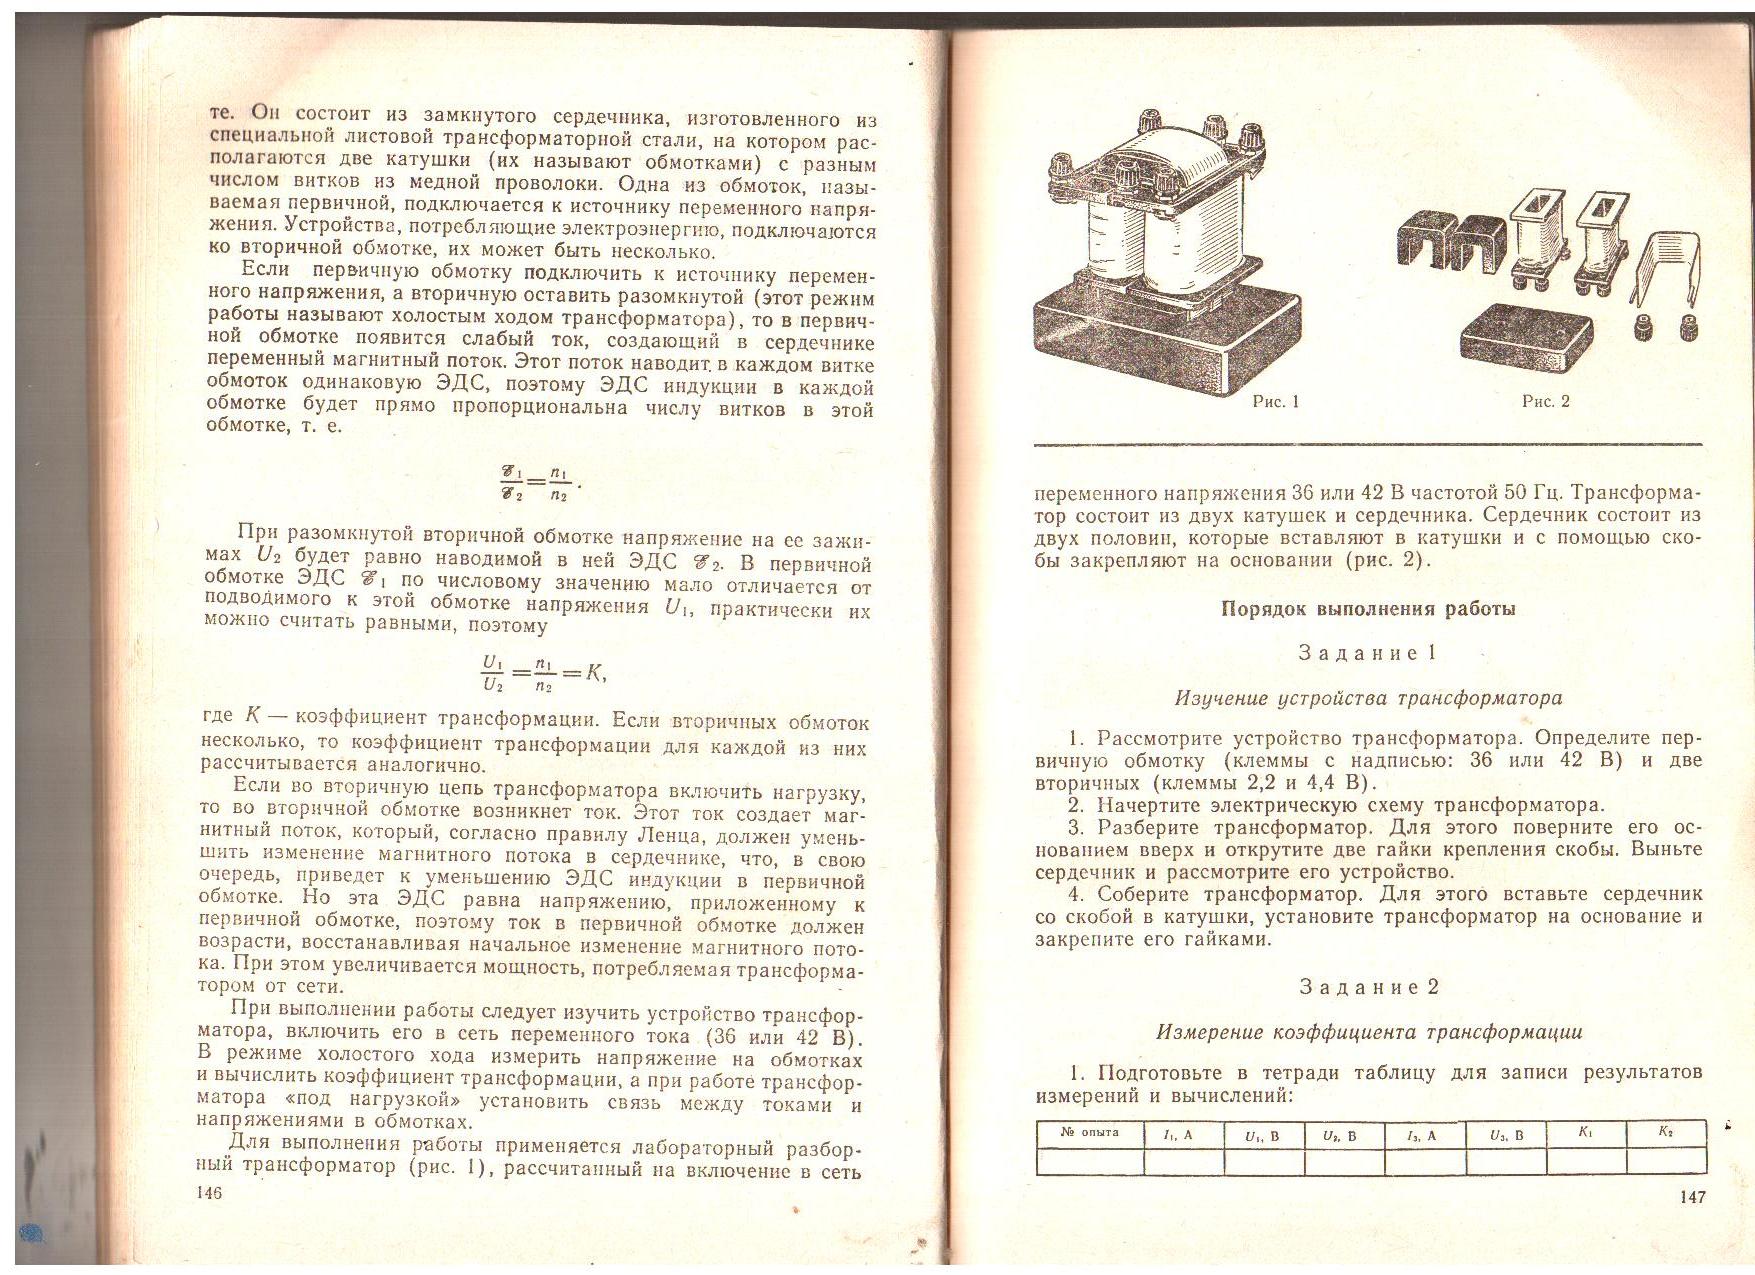 Лабораторный практикум по физике для обучающихся техникума (1 курс)